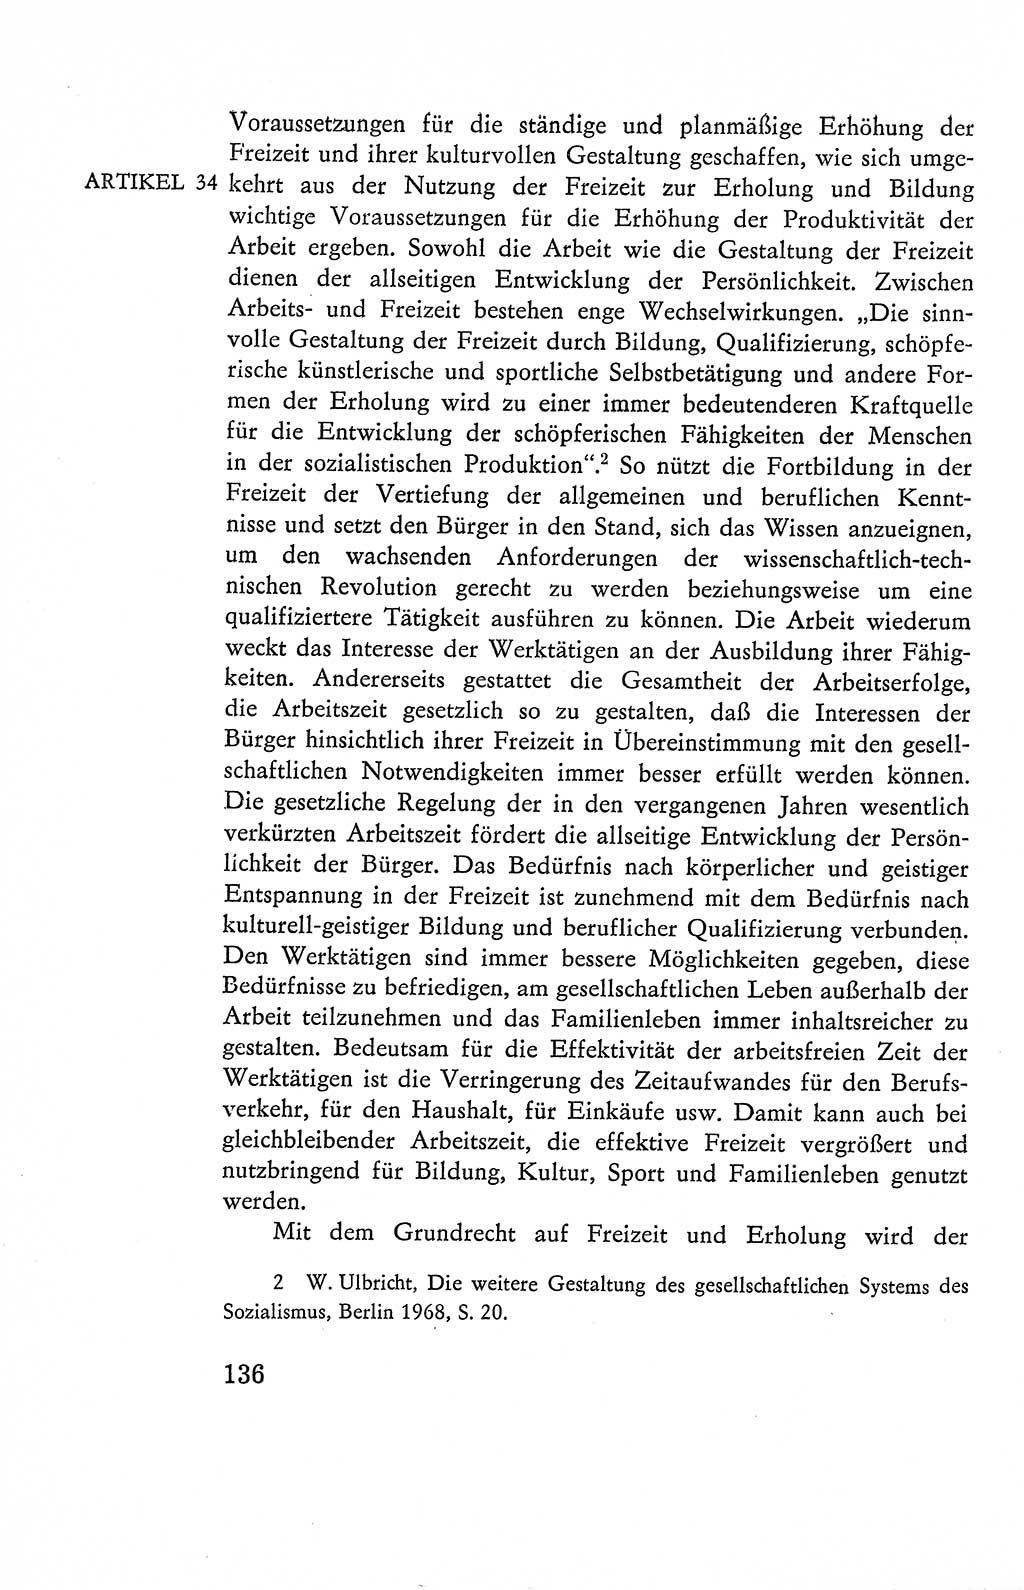 Verfassung der Deutschen Demokratischen Republik (DDR), Dokumente, Kommentar 1969, Band 2, Seite 136 (Verf. DDR Dok. Komm. 1969, Bd. 2, S. 136)